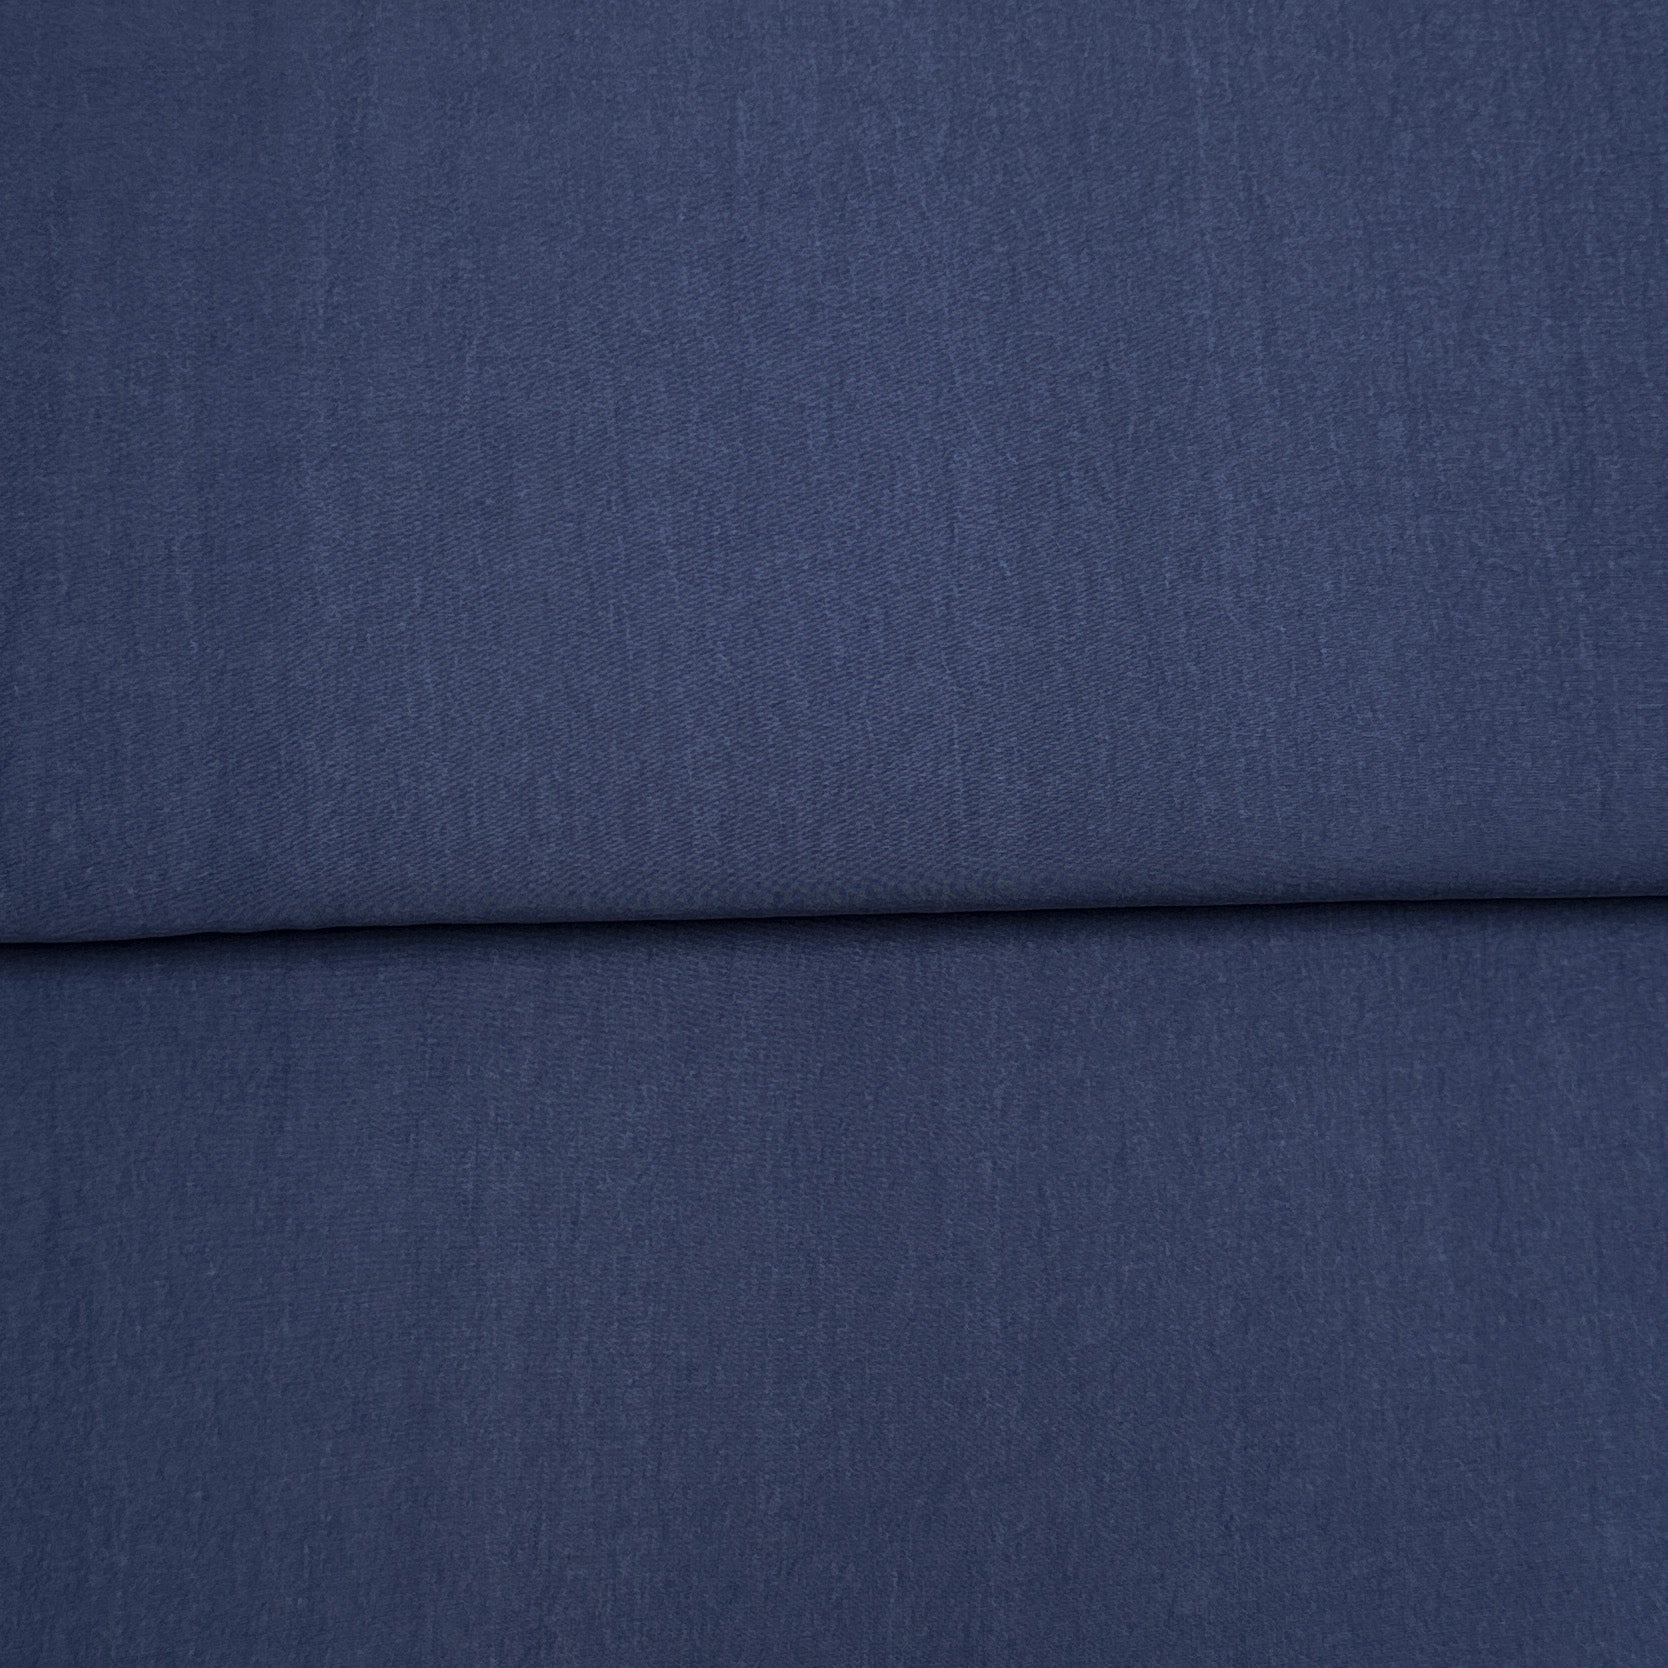 Dark blue denim look - Katia Fabrics - Woven TENCEL™